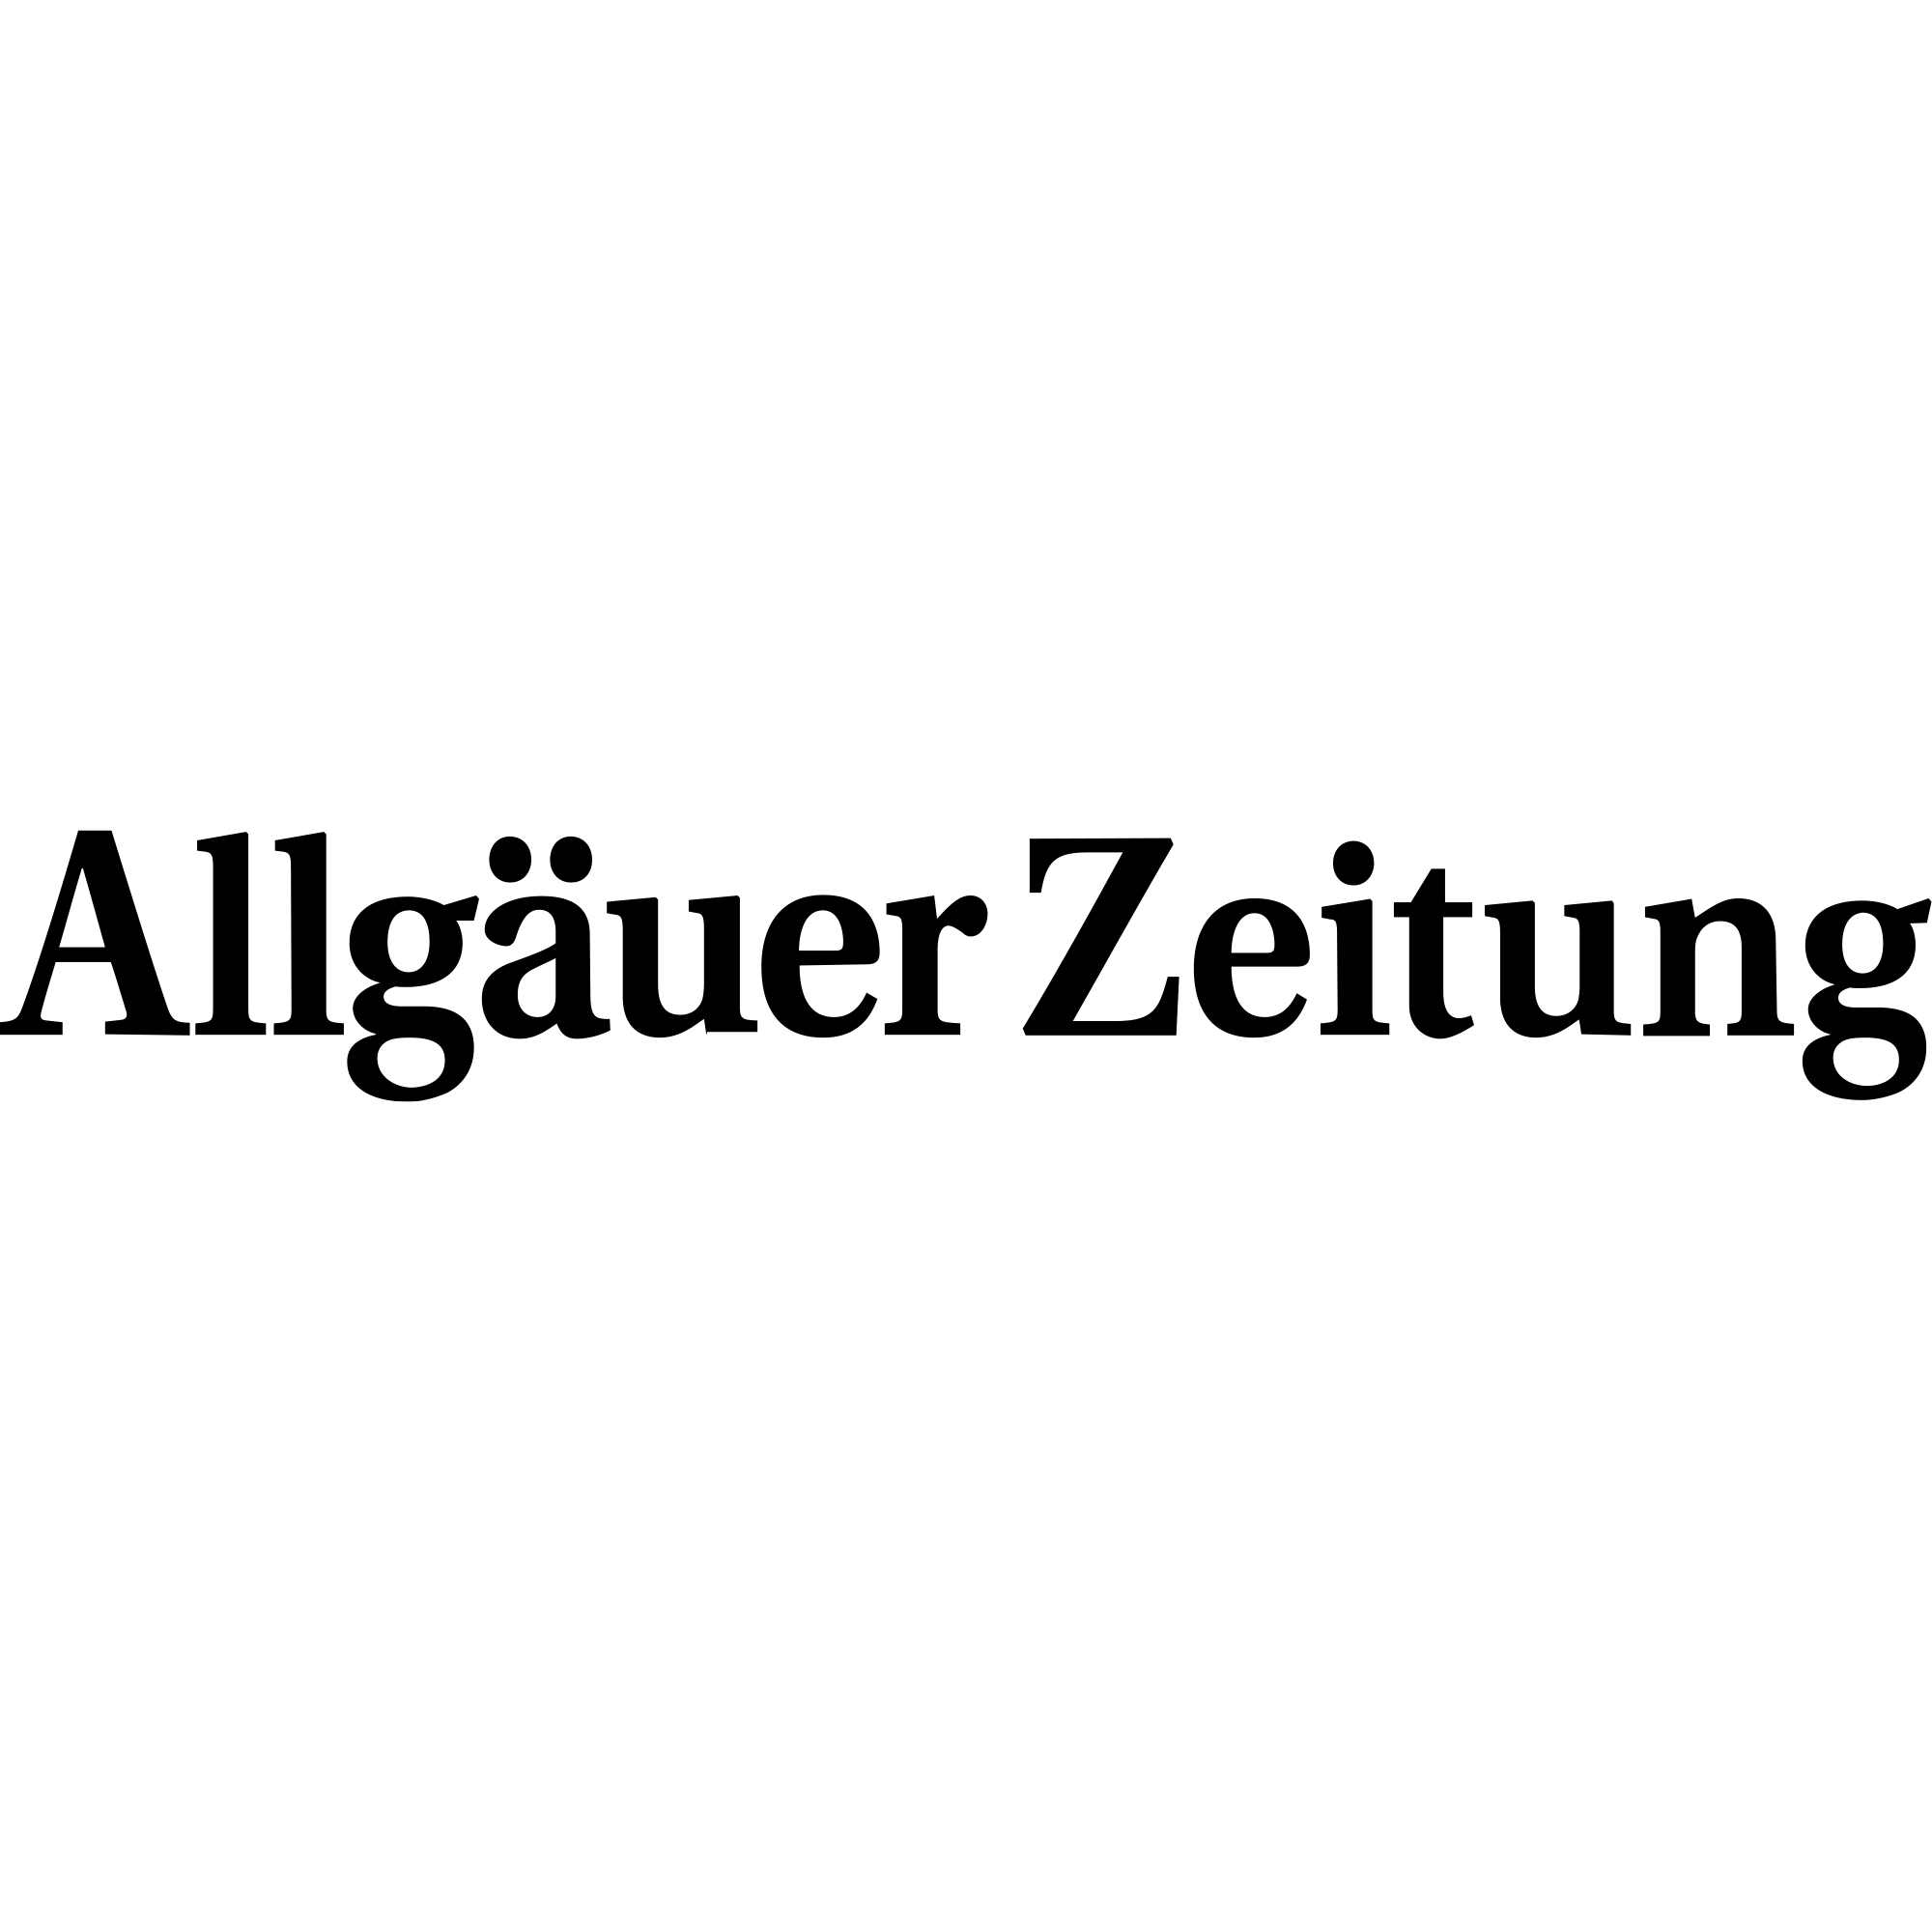 Logo/Wortmarke der Allgäuer Zeitung in Schwarz auf transparentem Hintergrund.